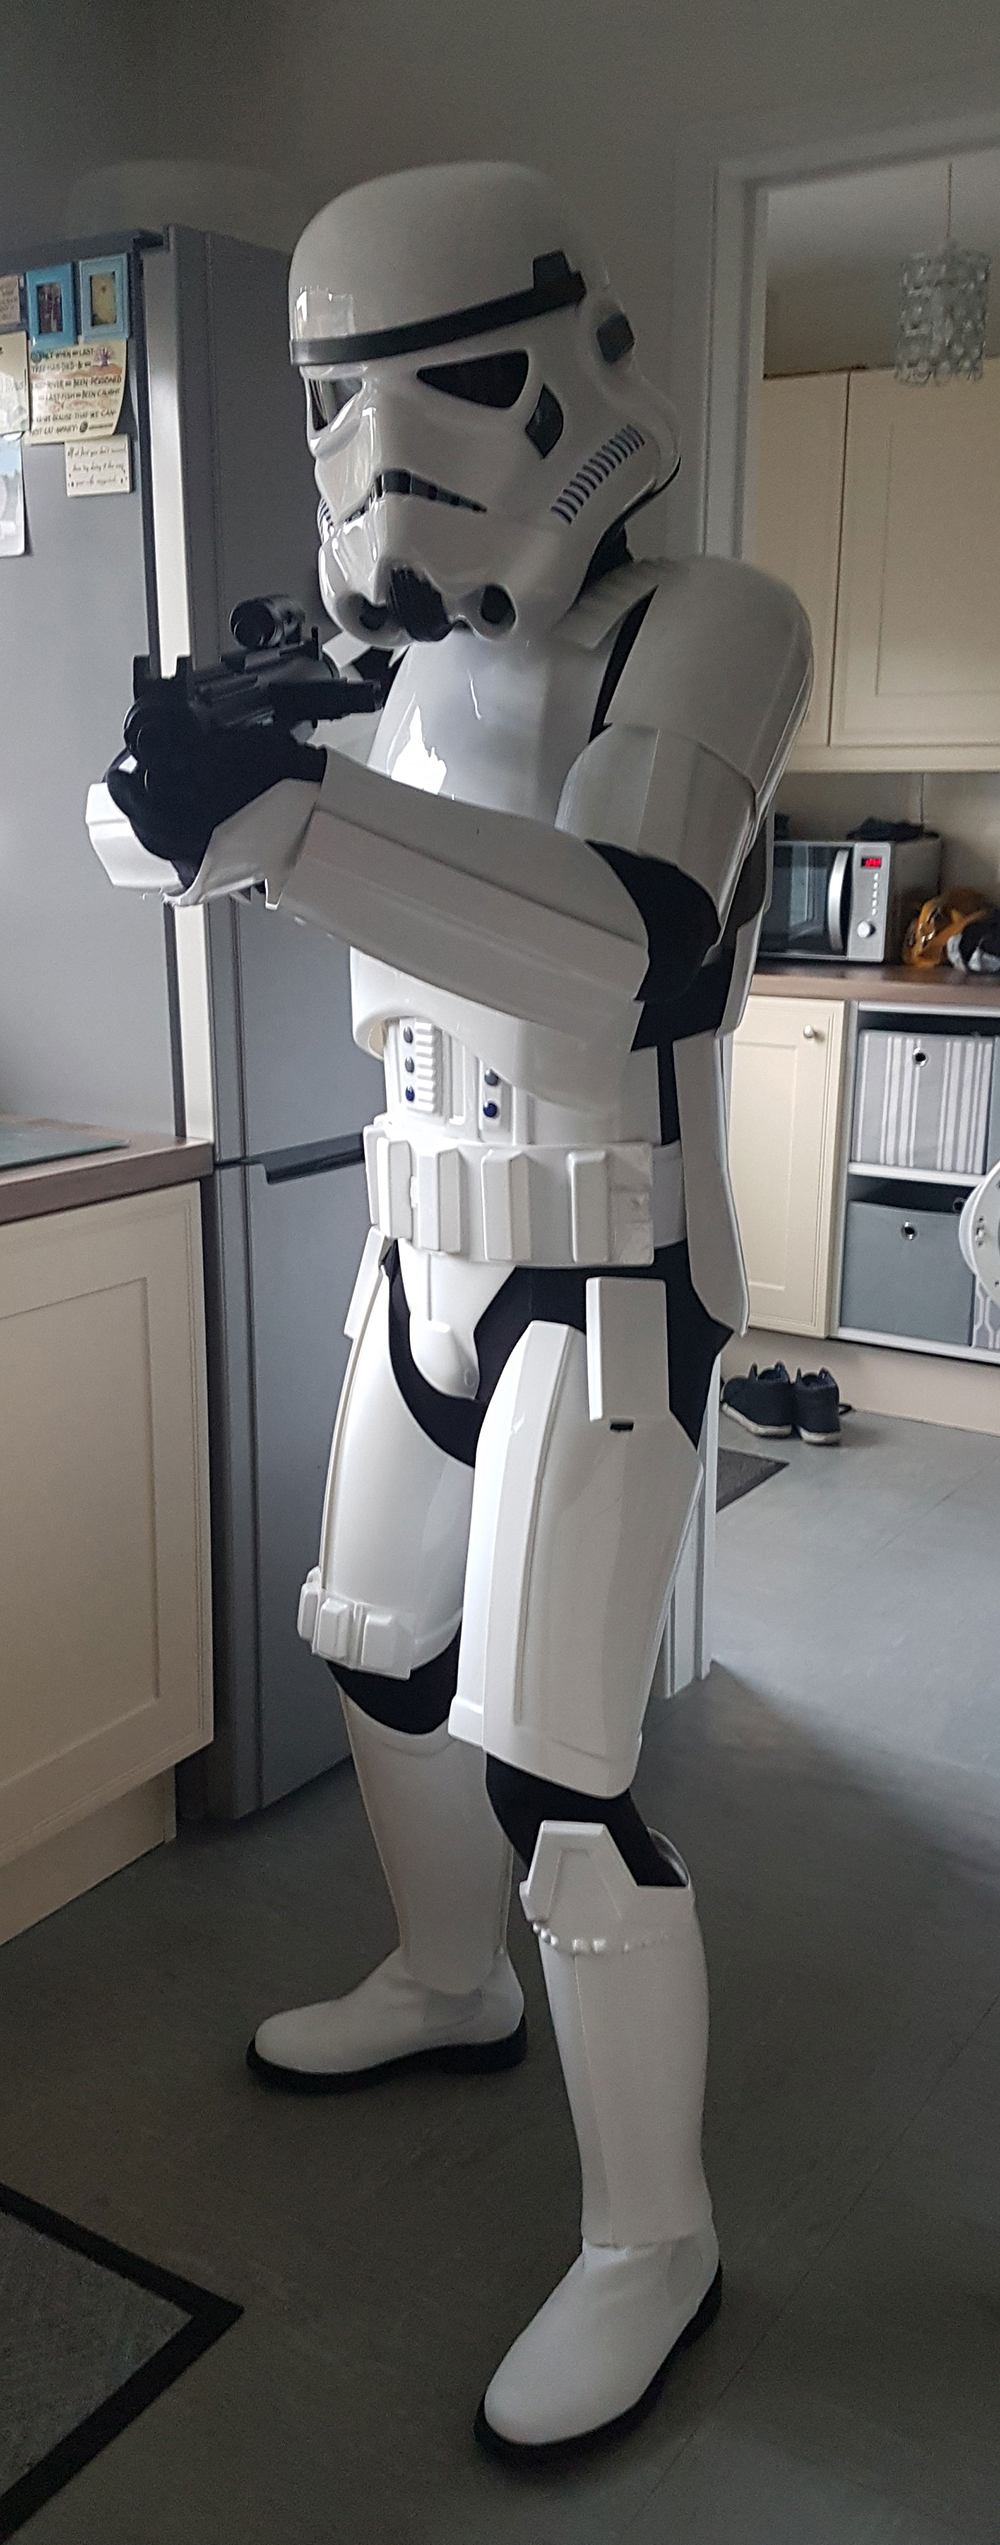 Stormtrooper Jedi-Robe Replica Armour Costume Review